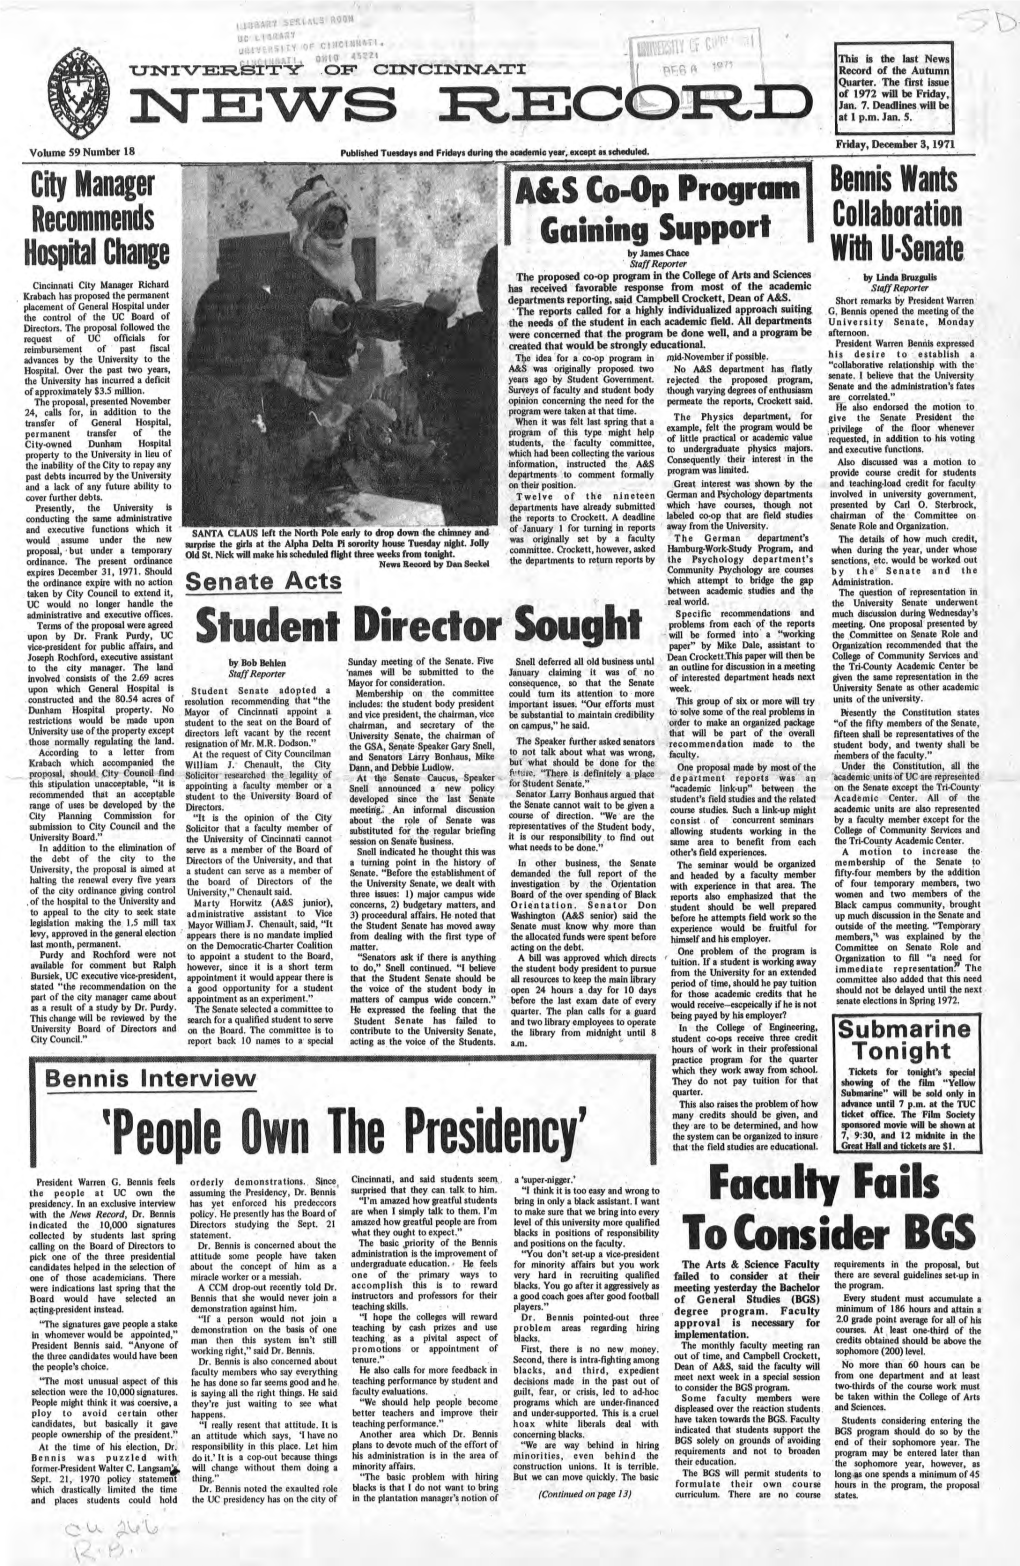 University of Cincinnati News Record. Friday, December 8, 1971. Vol. 59